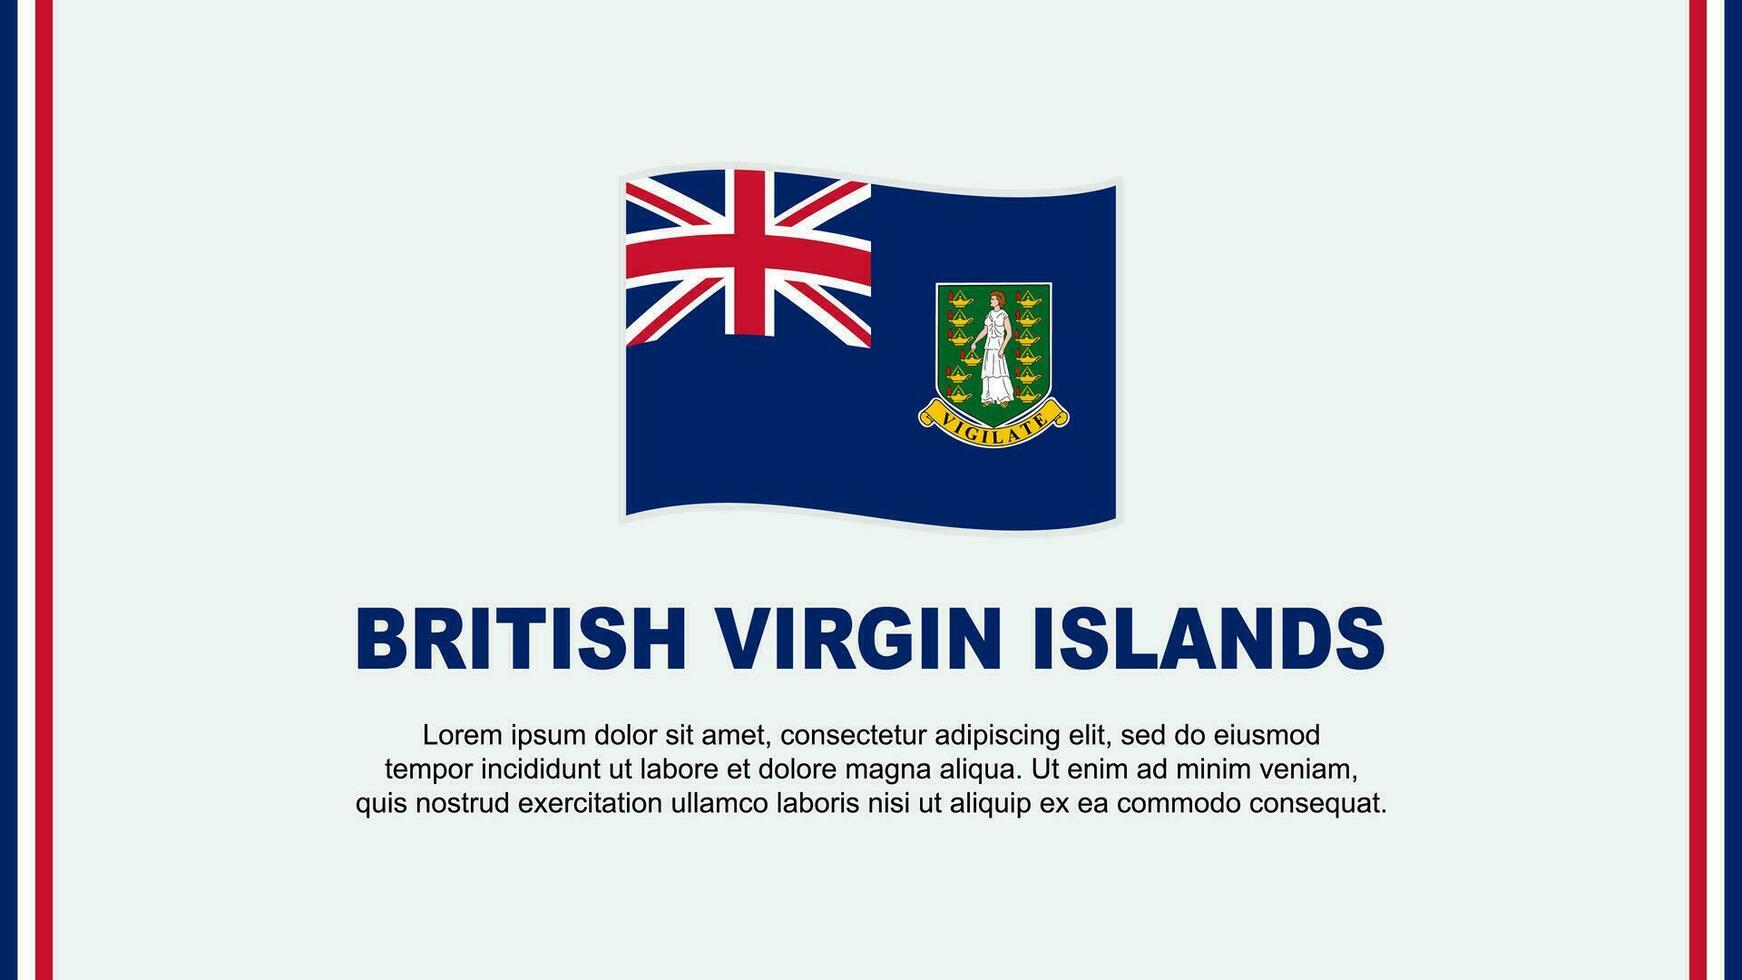 British Virgin Islands Flag Abstract Background Design Template. British Virgin Islands Independence Day Banner Social Media Vector Illustration. Cartoon